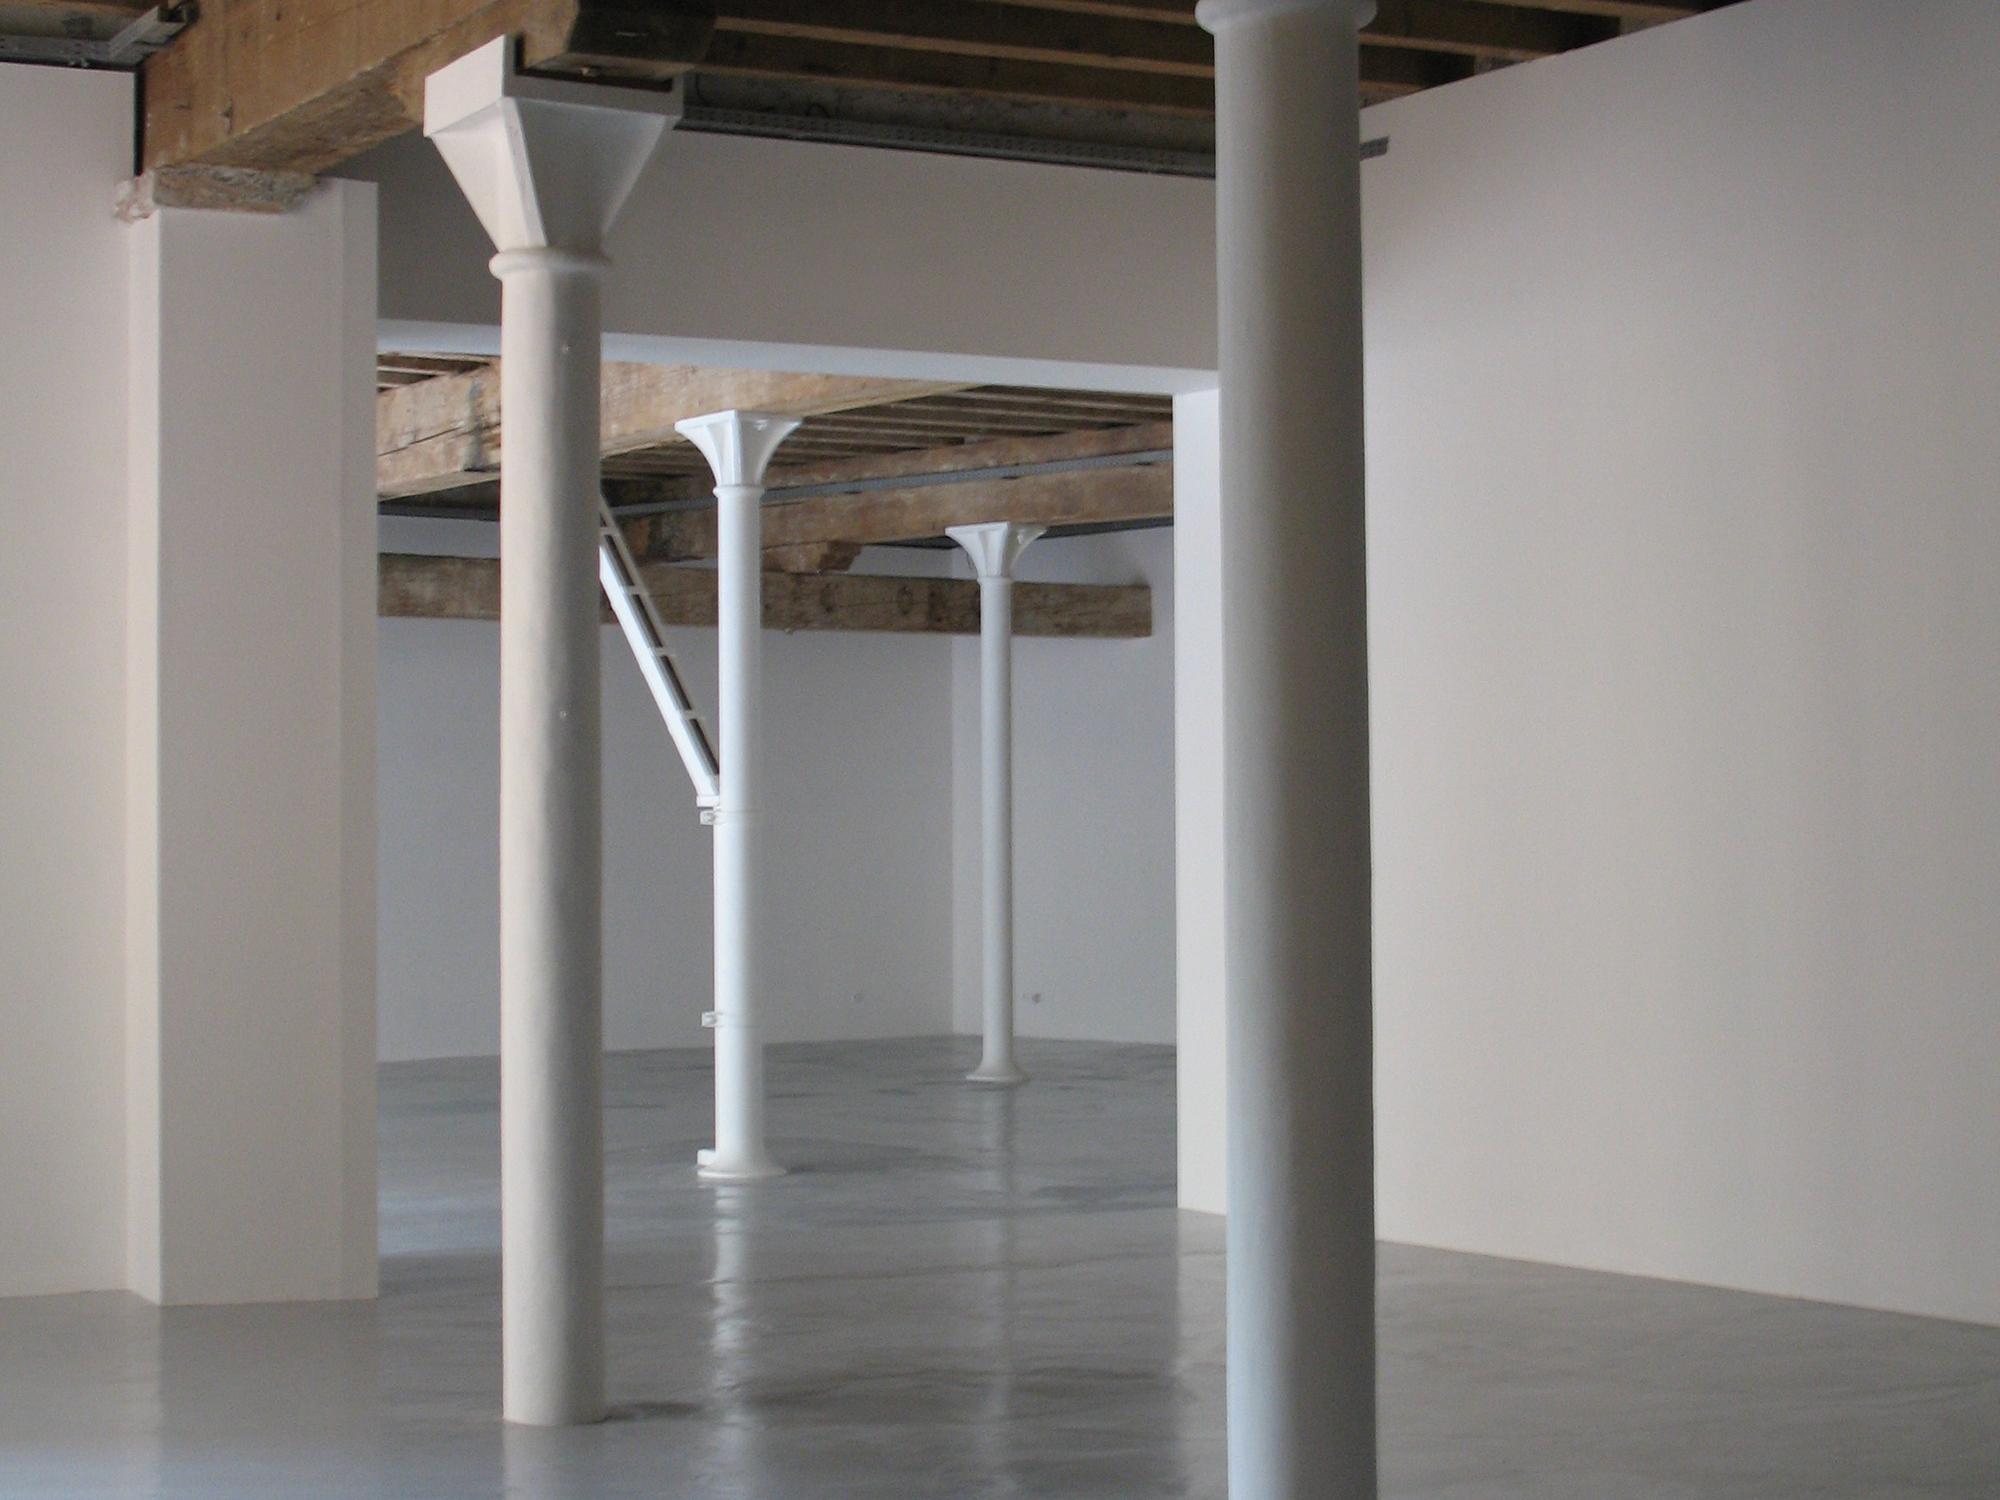 Vdchrnqs, espace d'art contemporain, 2009